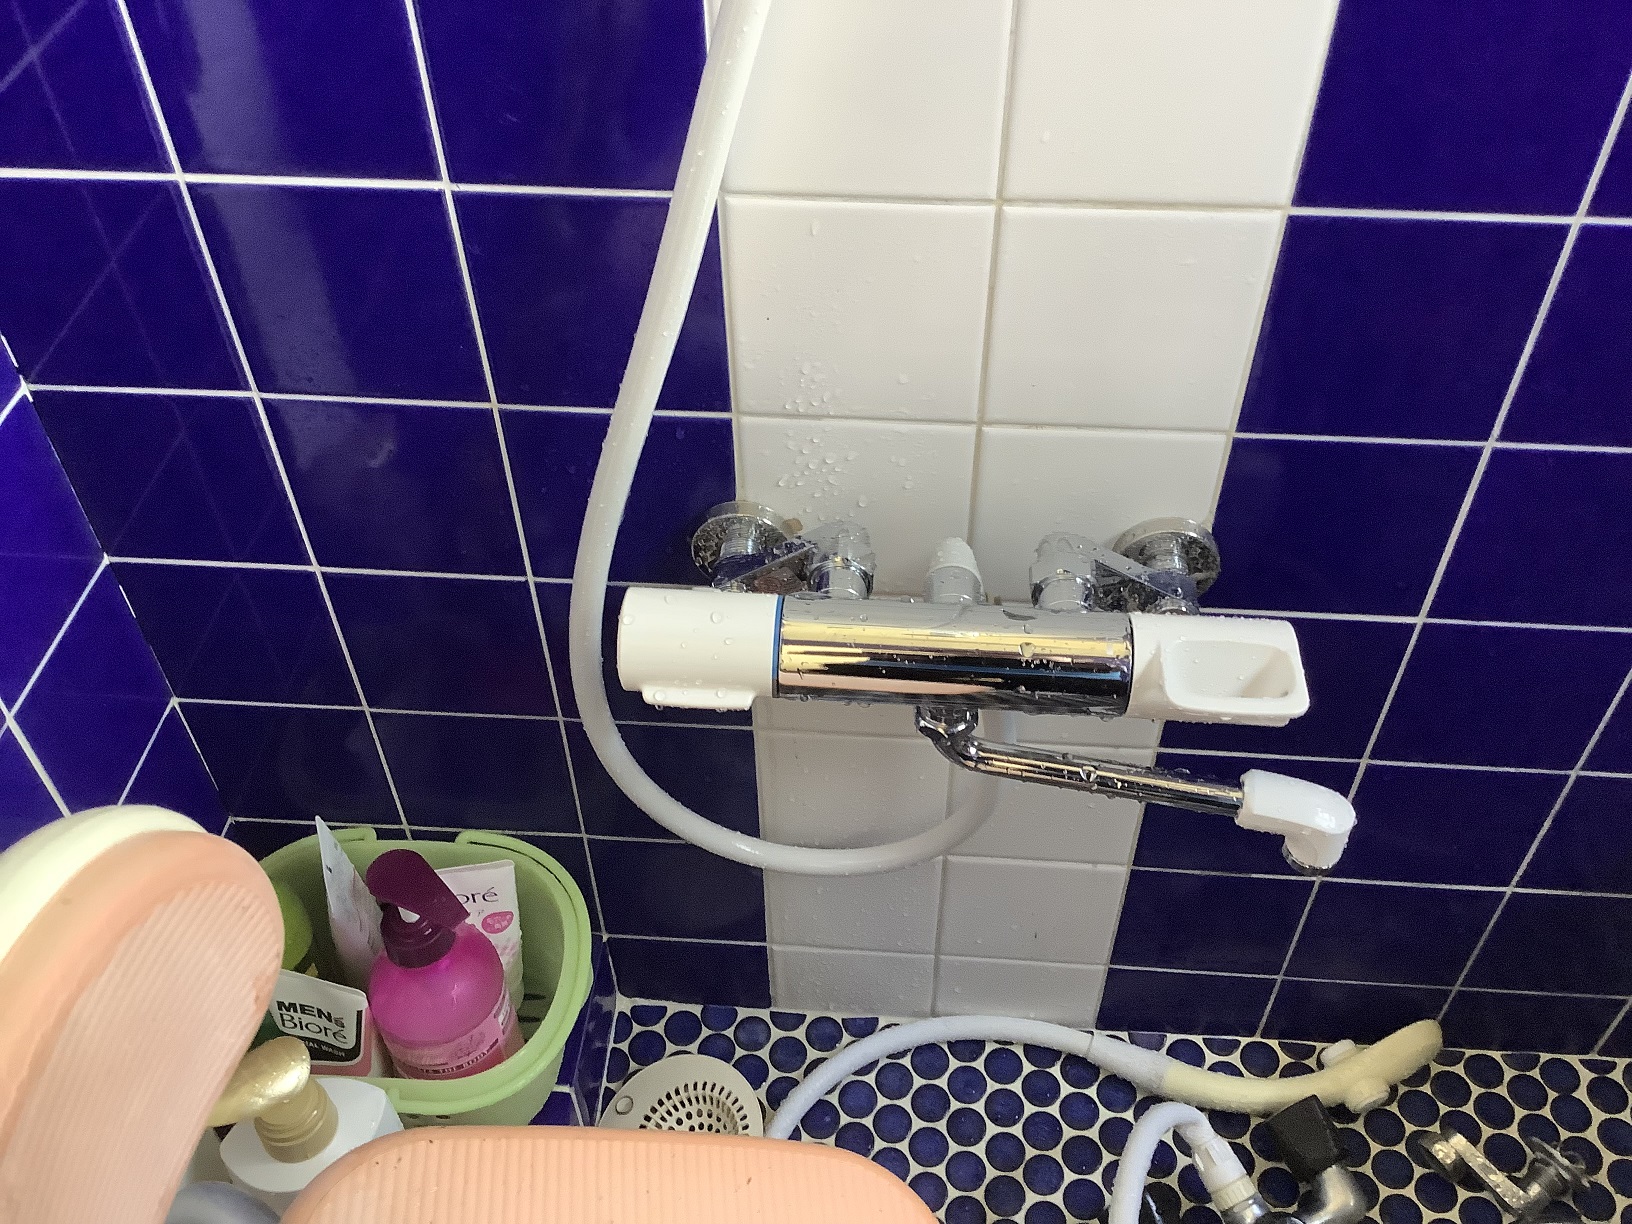 浴室シャワー混合栓交換